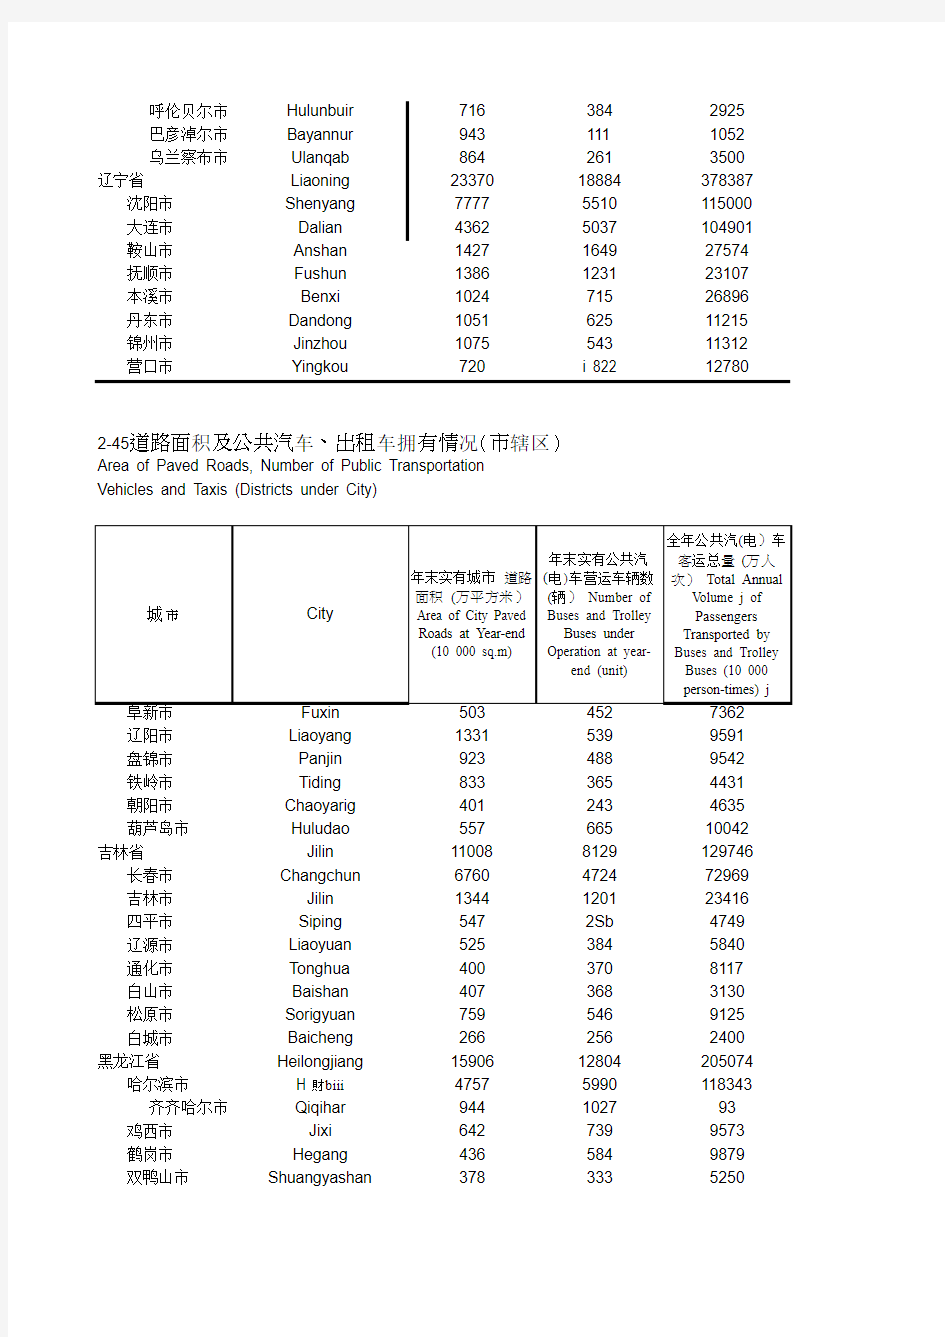 中国城市统计年鉴2014 道路面积及公共汽车、出租车拥有情况(市辖区)